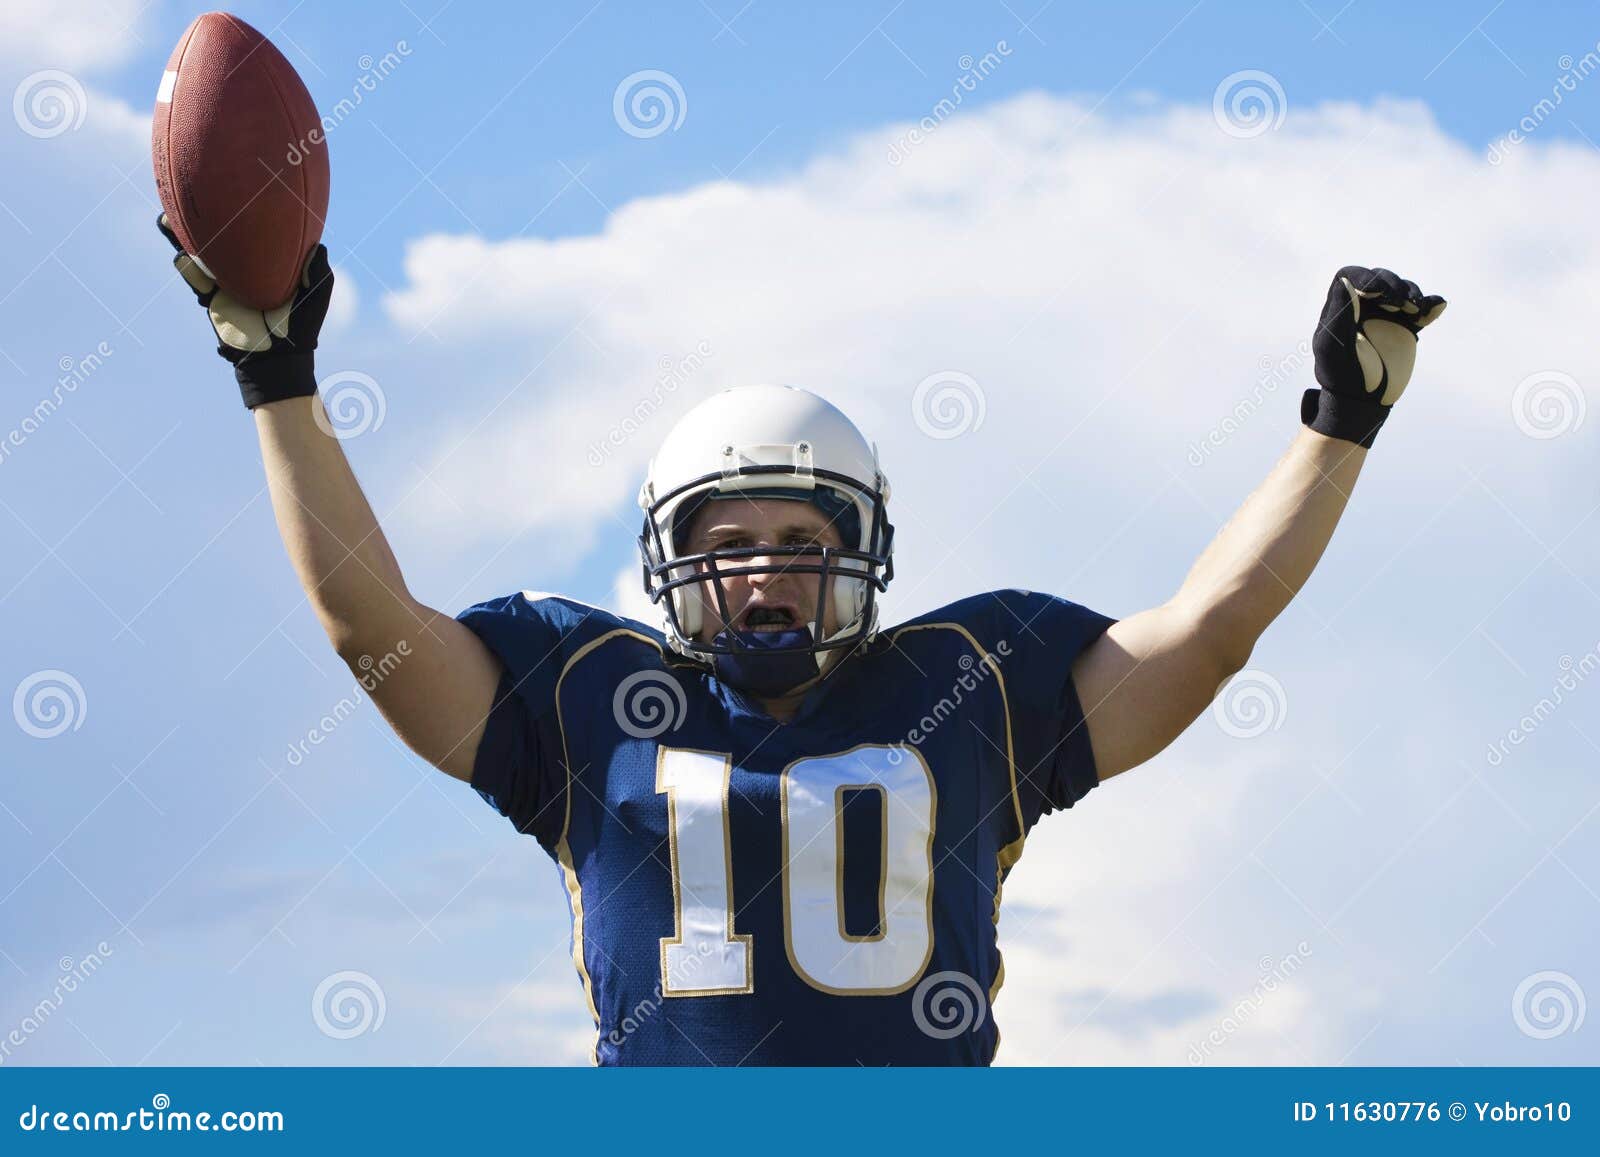 football player touchdown